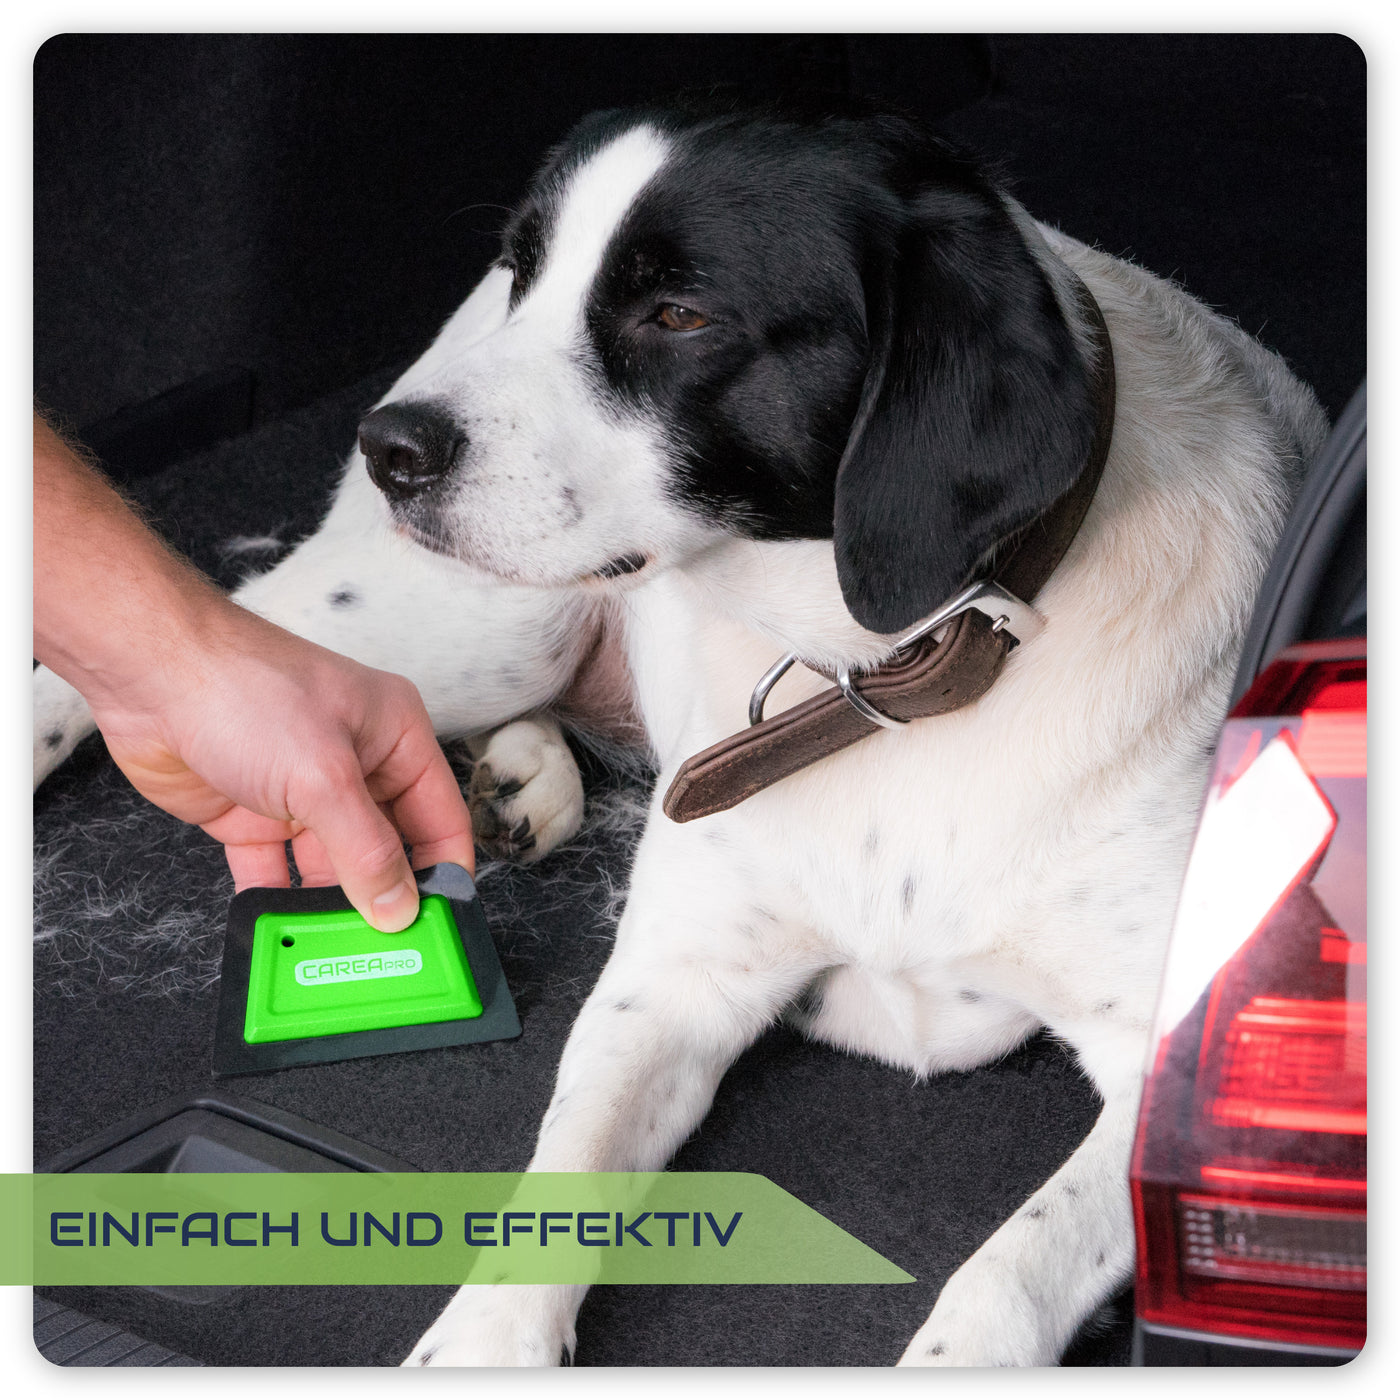 CAREApro Smart Brush - Tierhaarentferner fürs Auto und zuhause. Entfernt Hunde und Katzenhaare von Polstermöbeln.